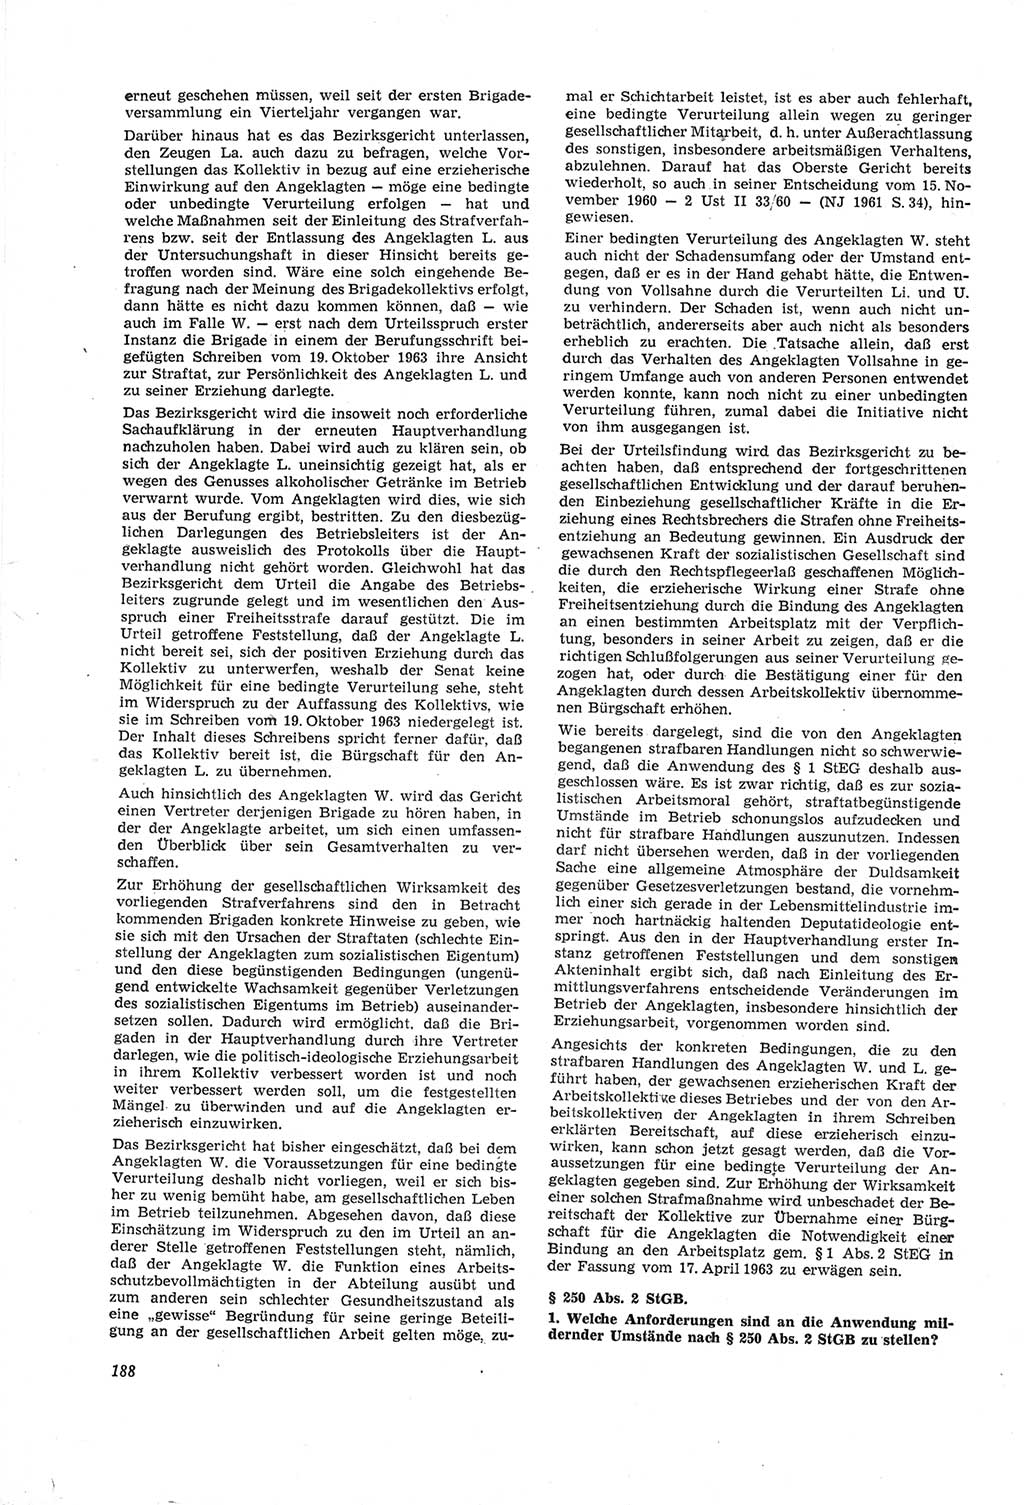 Neue Justiz (NJ), Zeitschrift für Recht und Rechtswissenschaft [Deutsche Demokratische Republik (DDR)], 18. Jahrgang 1964, Seite 188 (NJ DDR 1964, S. 188)